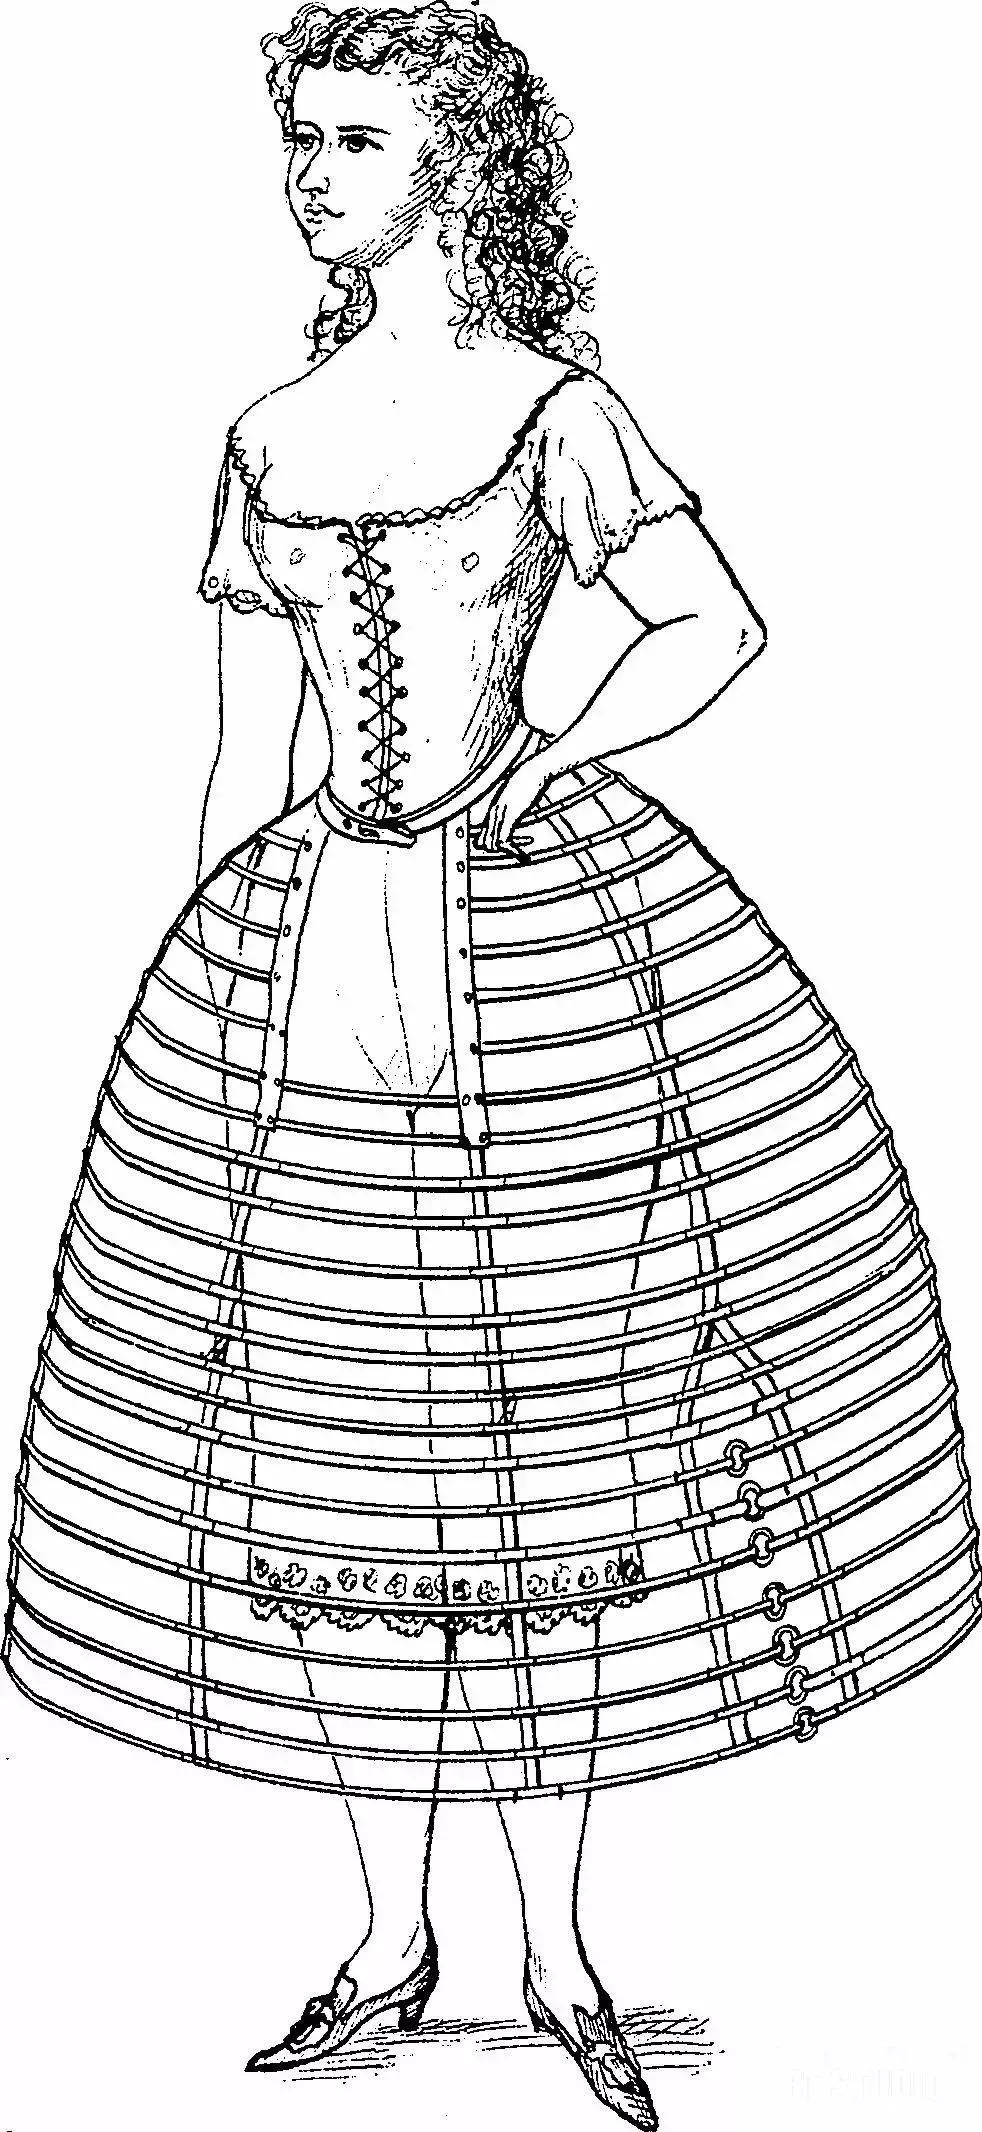 它脱胎于18世纪洛可可时期裙装,因此这一时期也被叫做"新洛可可时期".